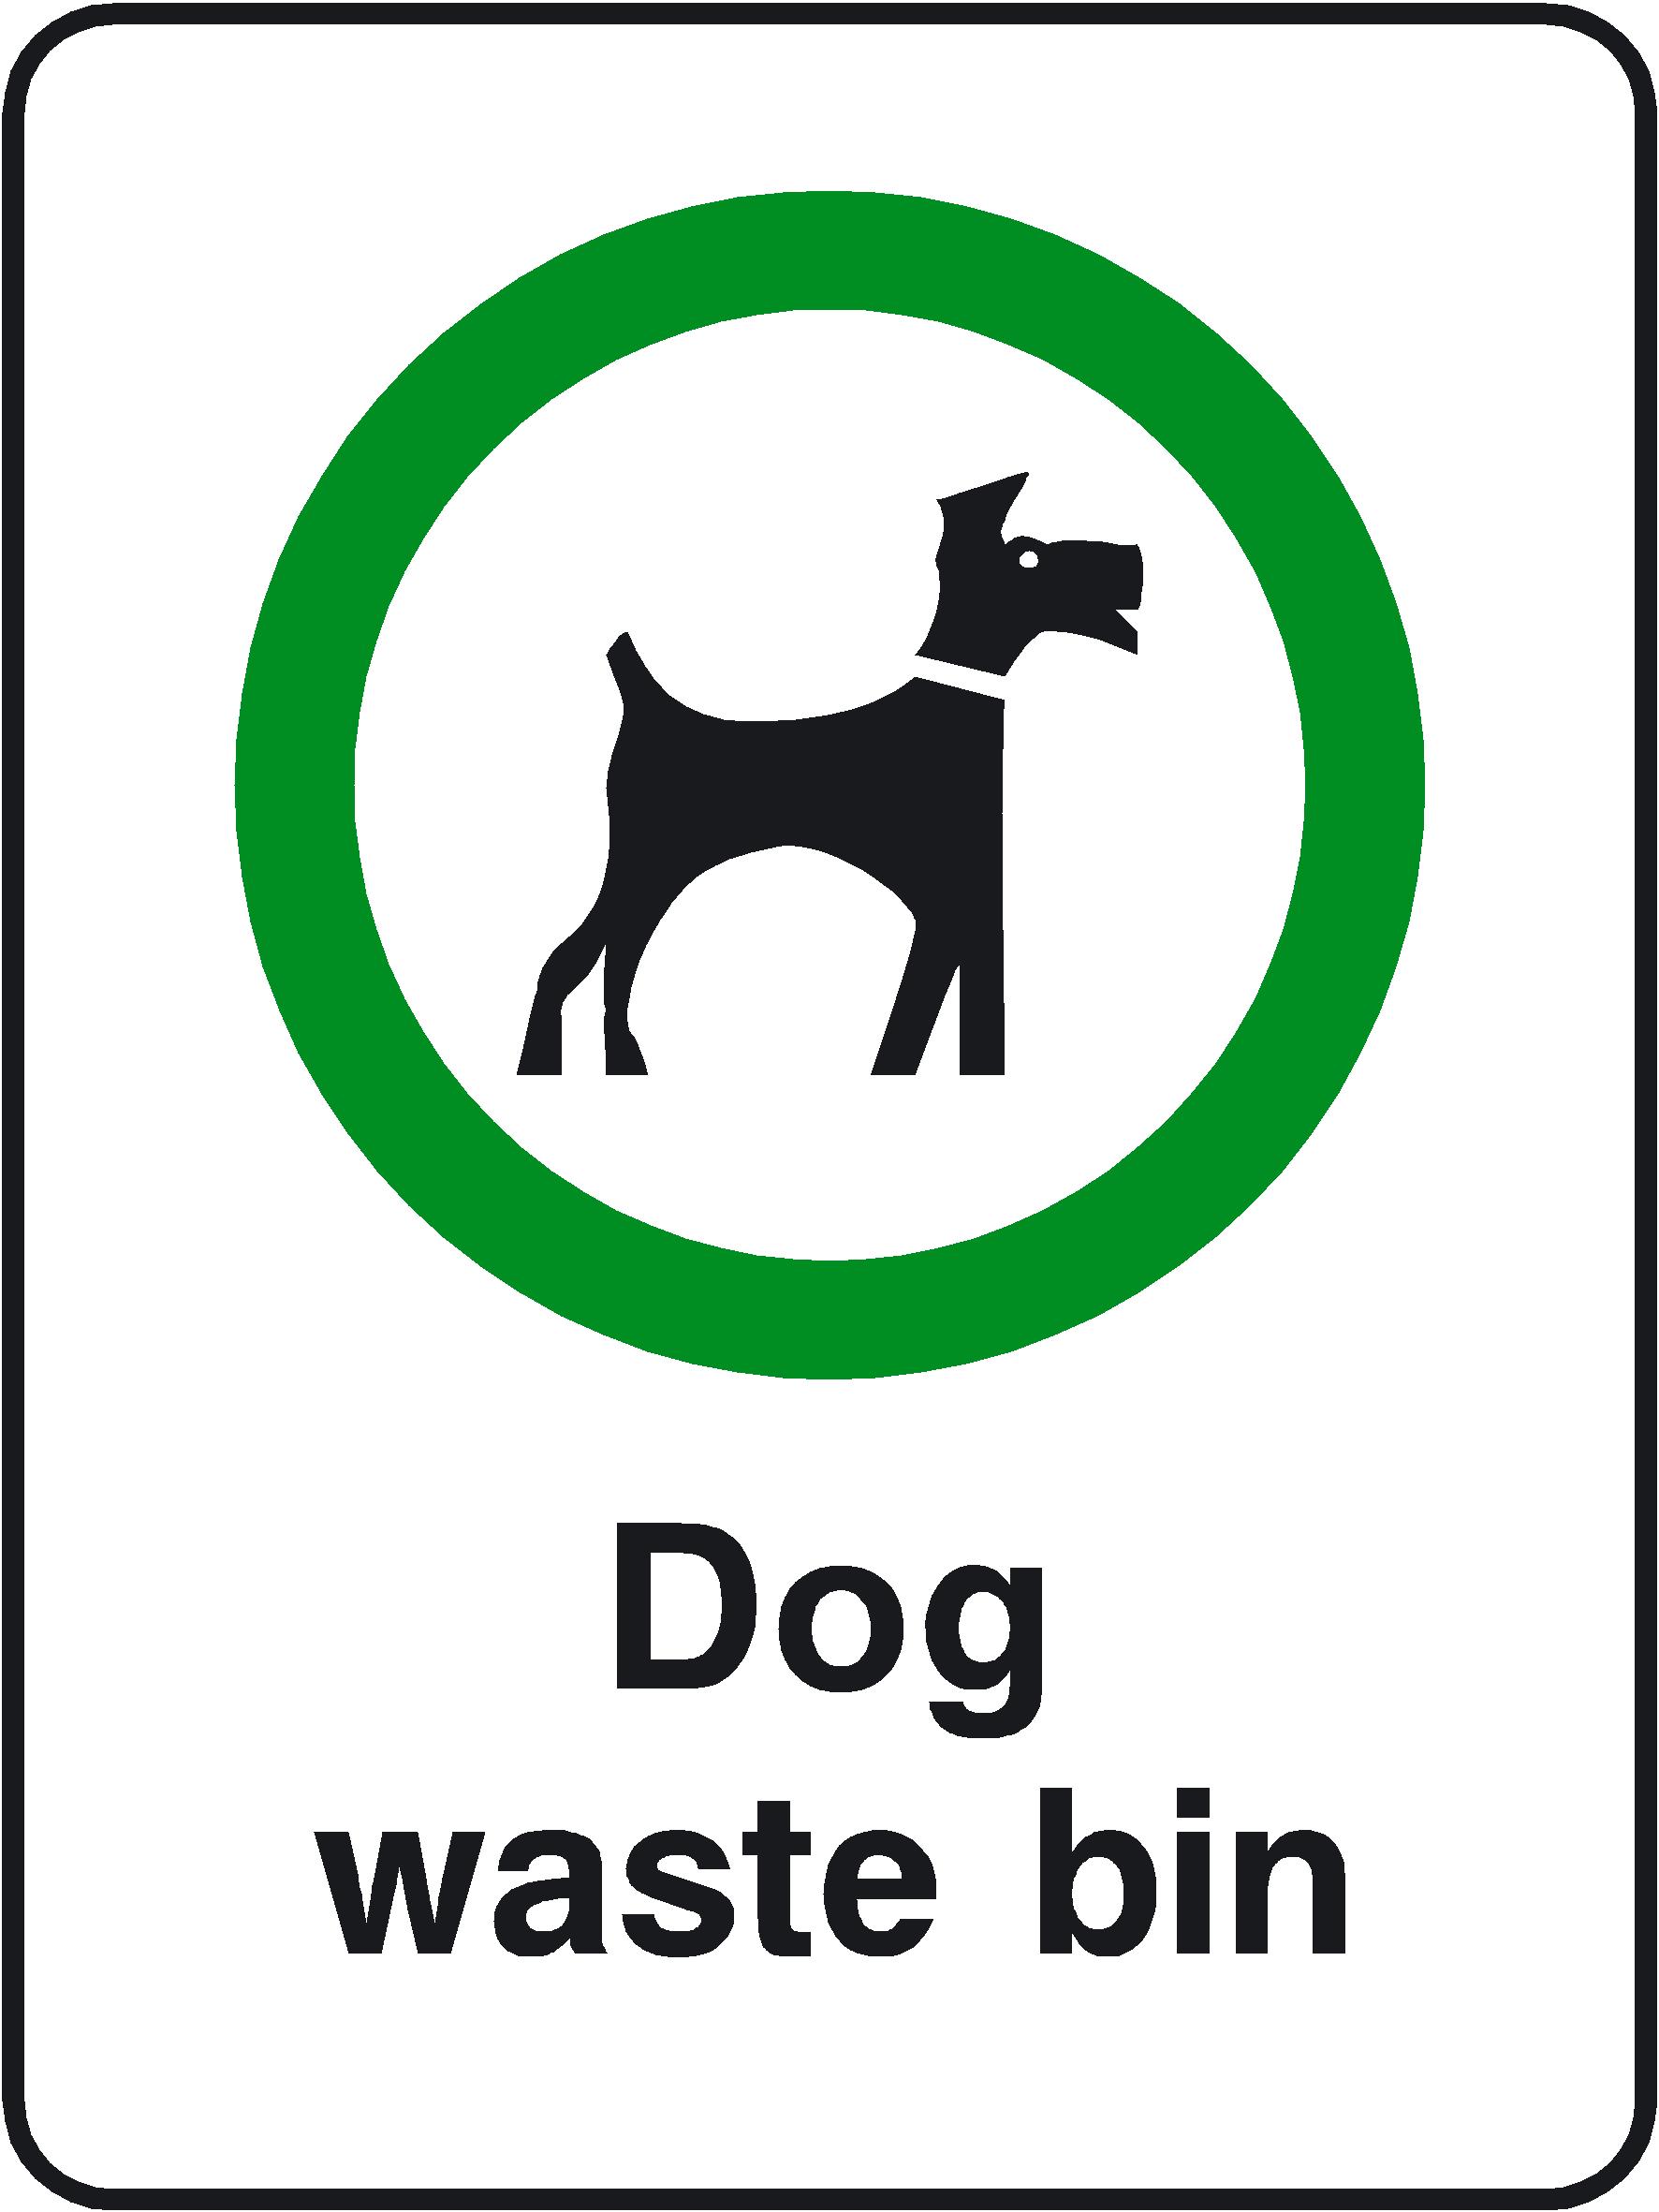 Dog Waste Bin playground safety sign 150x200mm - ClipArt Best ...